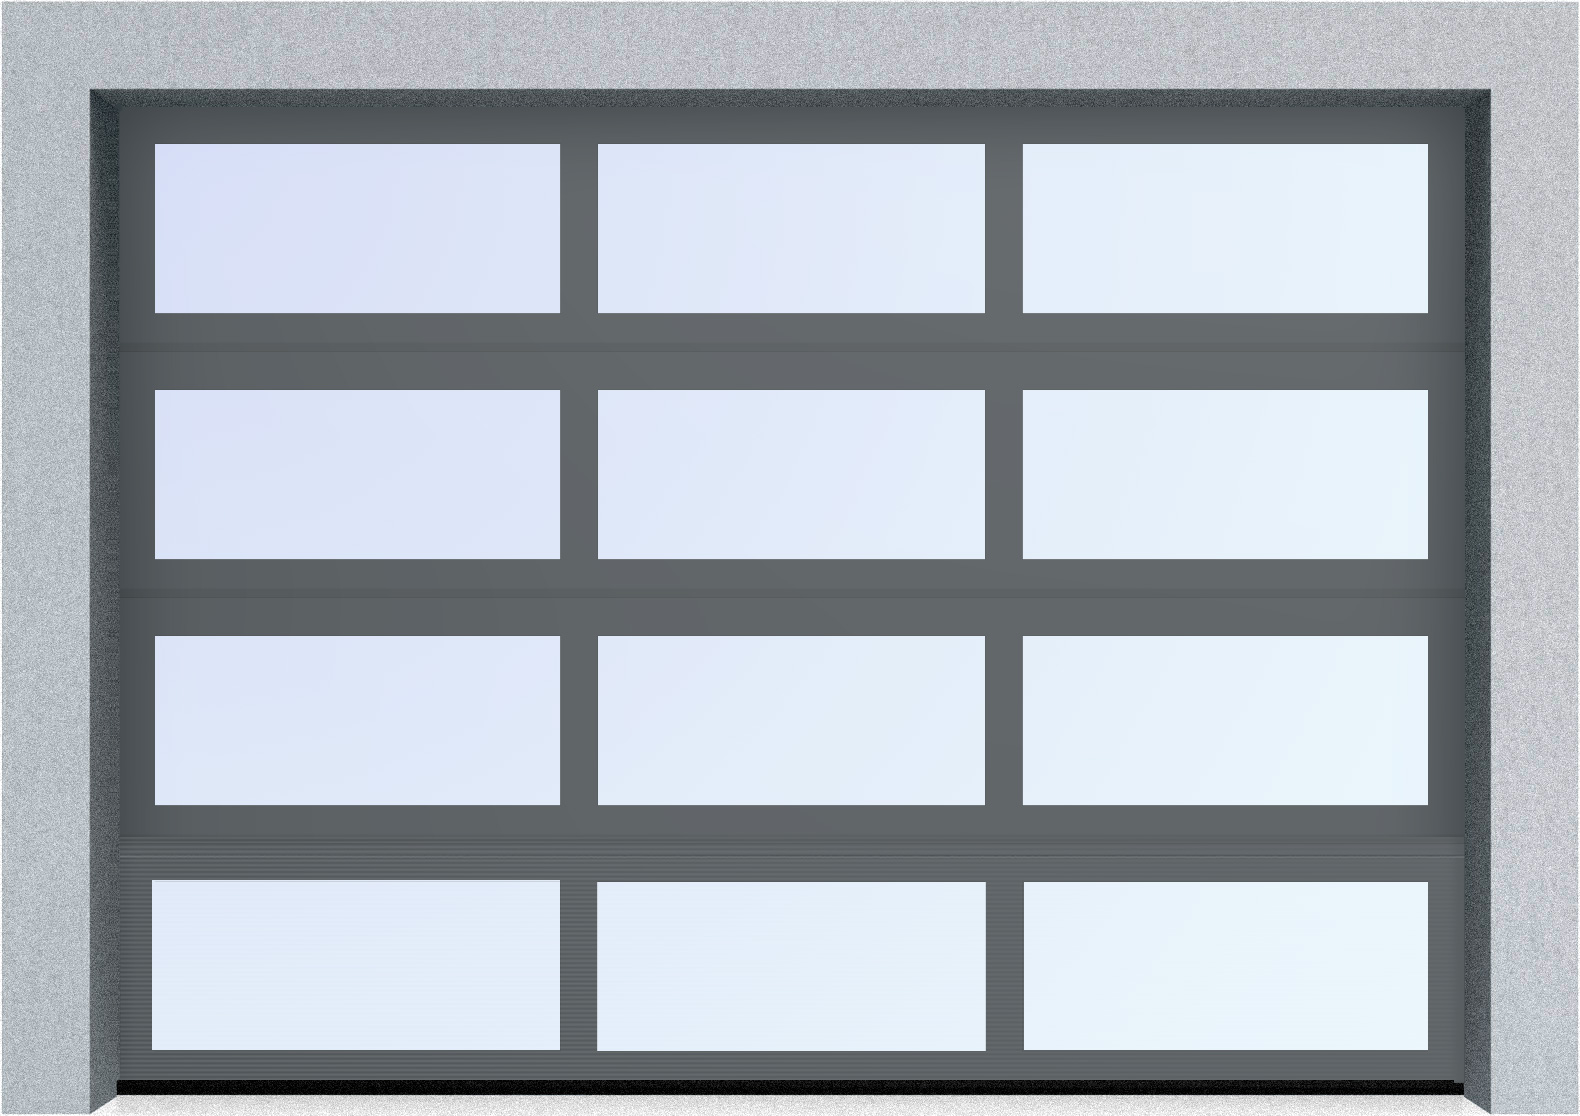  Автоматические секционные панорамные ворота серии AluTrend (АЛП) 6250х4500 стандартные цвета, фото 5 